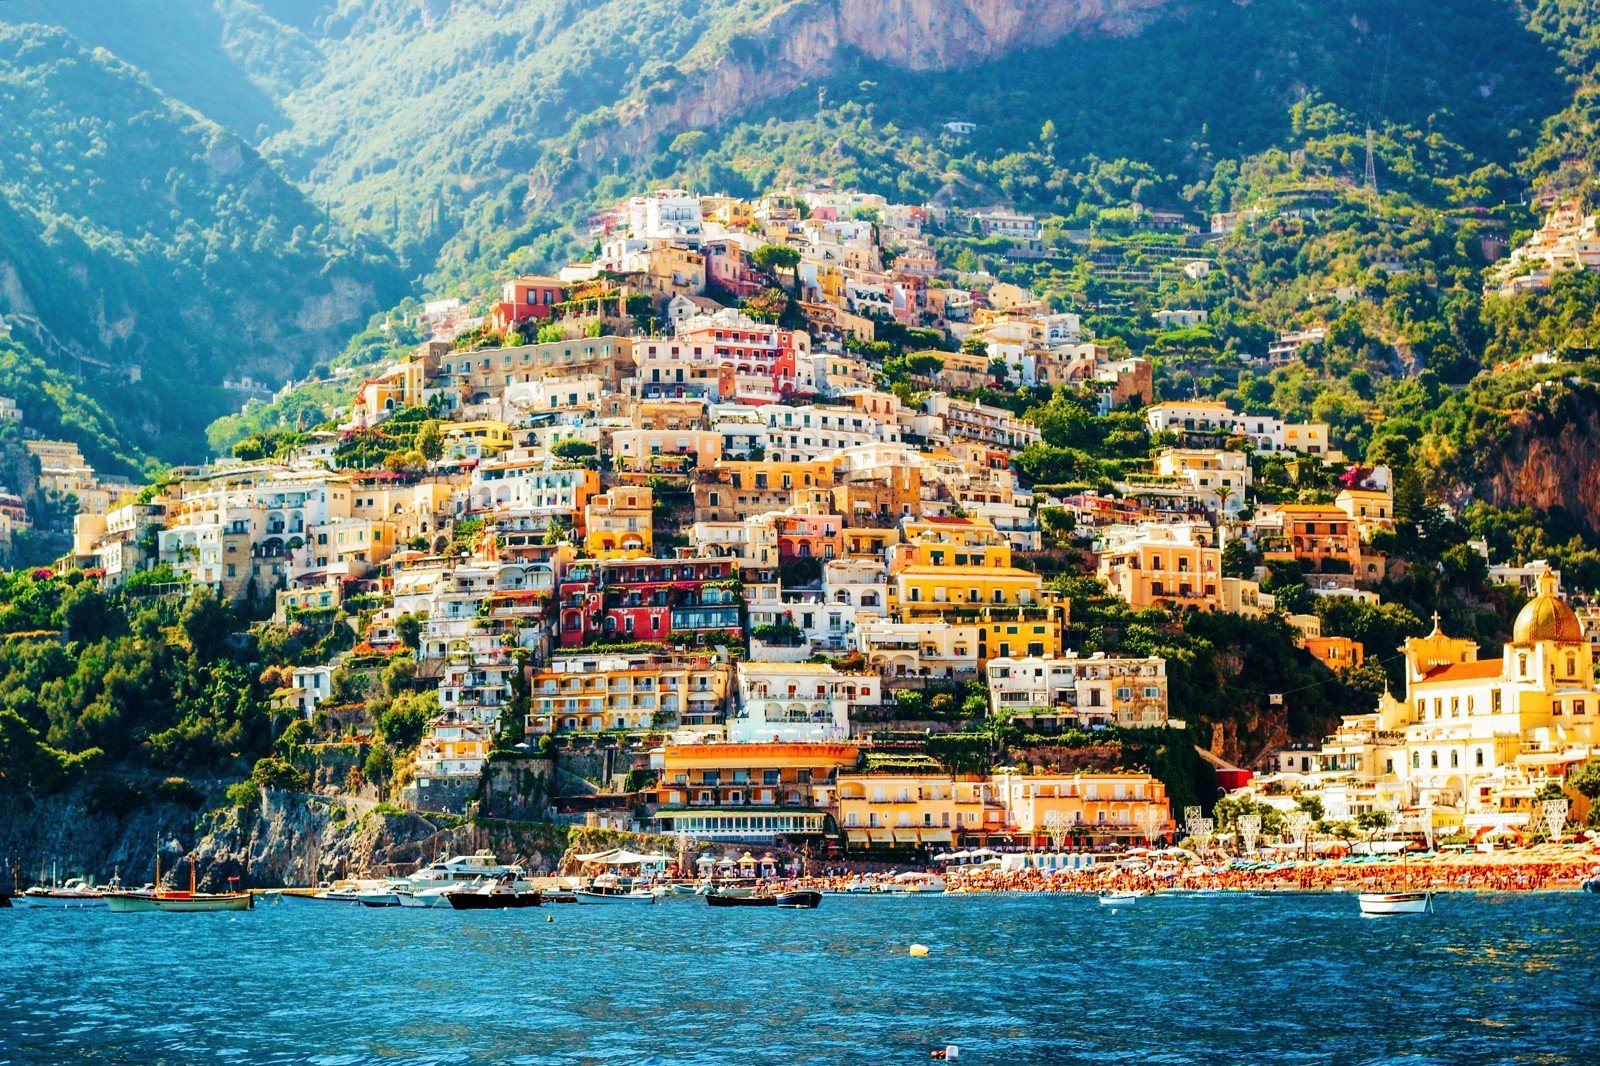 7 παραμυθένια χωριουδάκια που πρέπει να επισκεφτείς οπωσδήποτε αν πας στην Ιταλία - Φωτογραφία 7